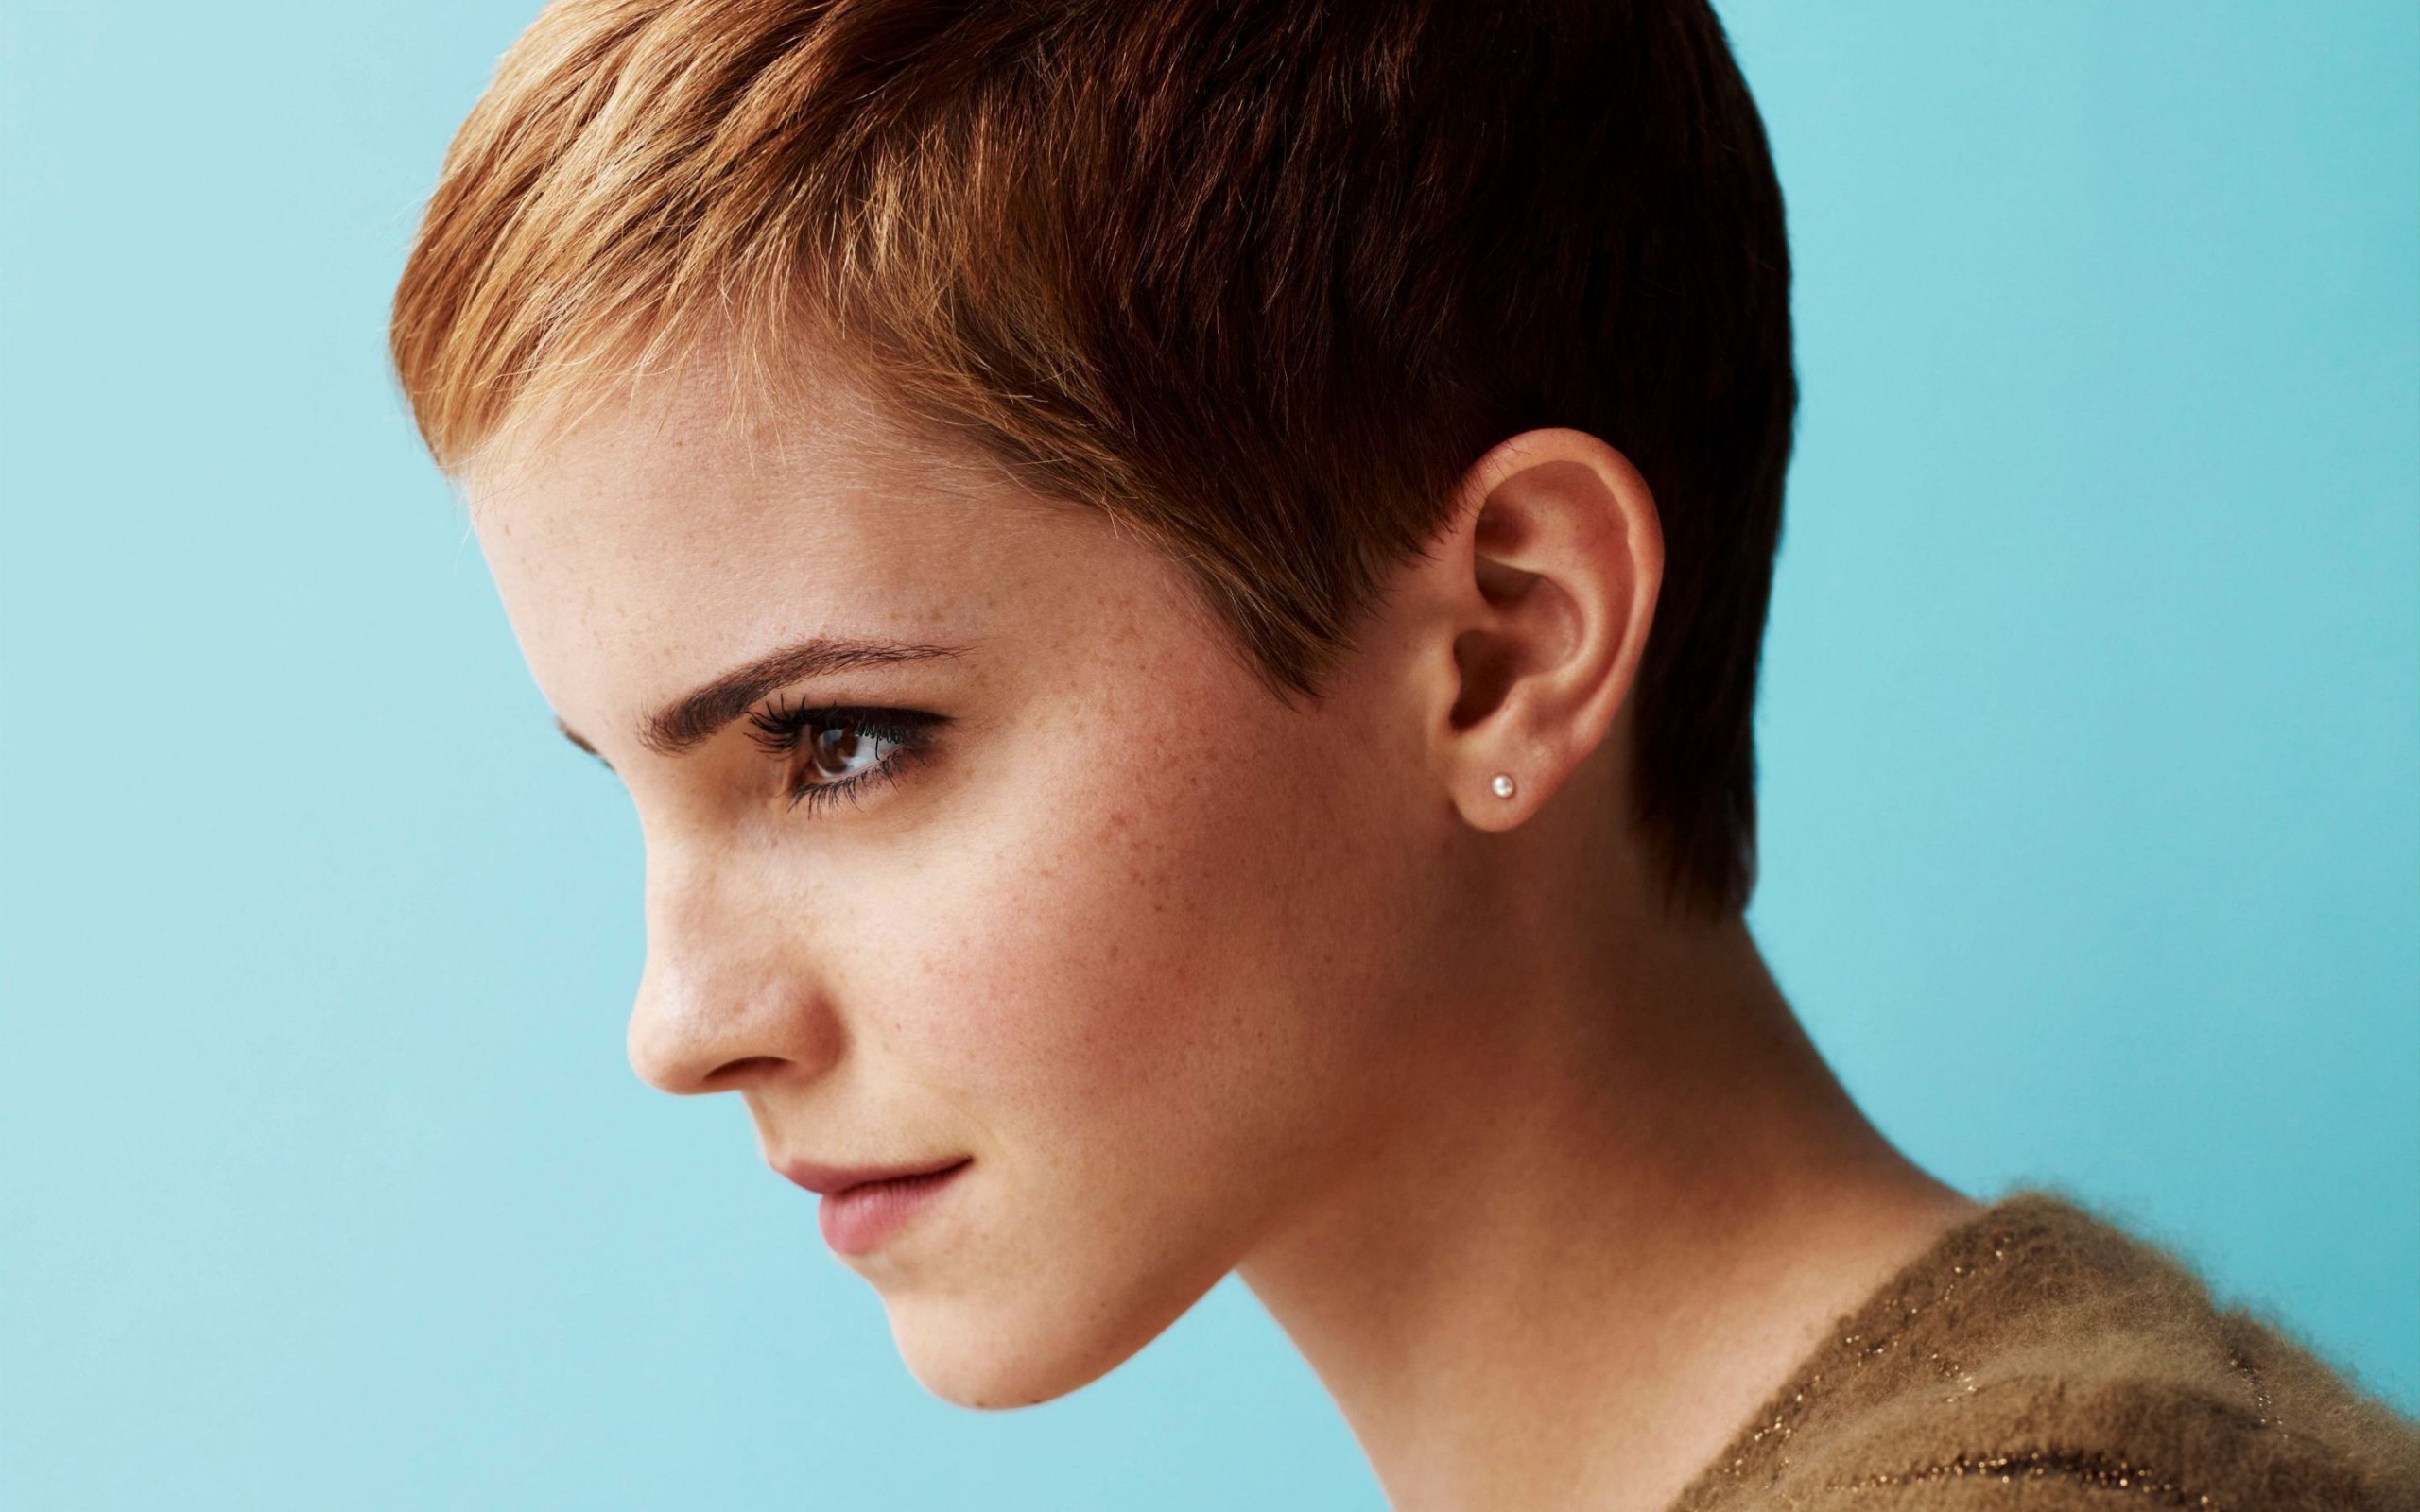 Emma Watson Short Hair for 2560 x 1600 widescreen resolution